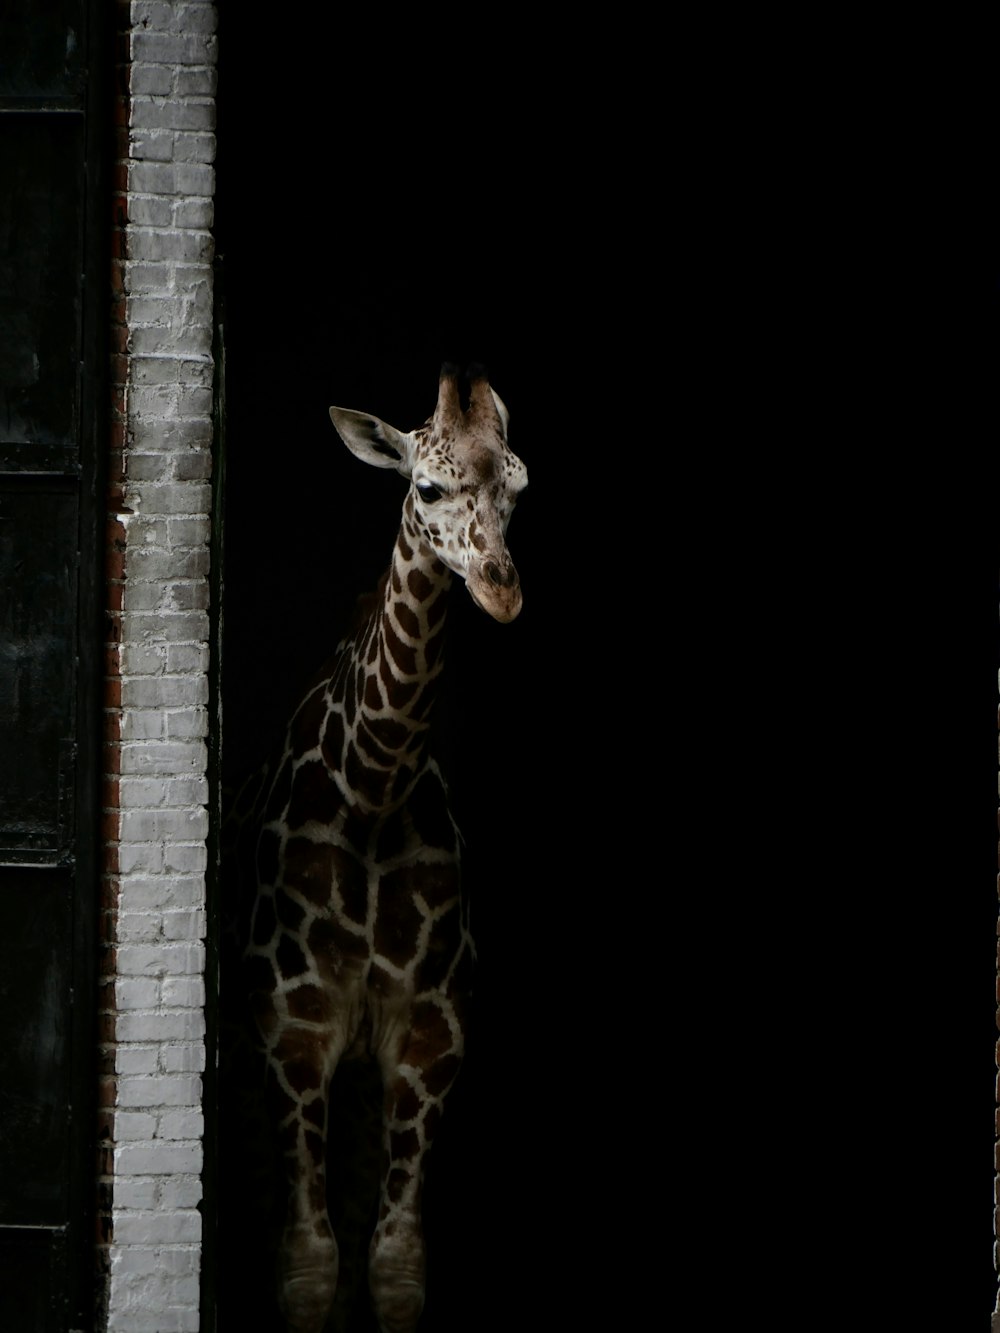 giraffe standing on window during daytime